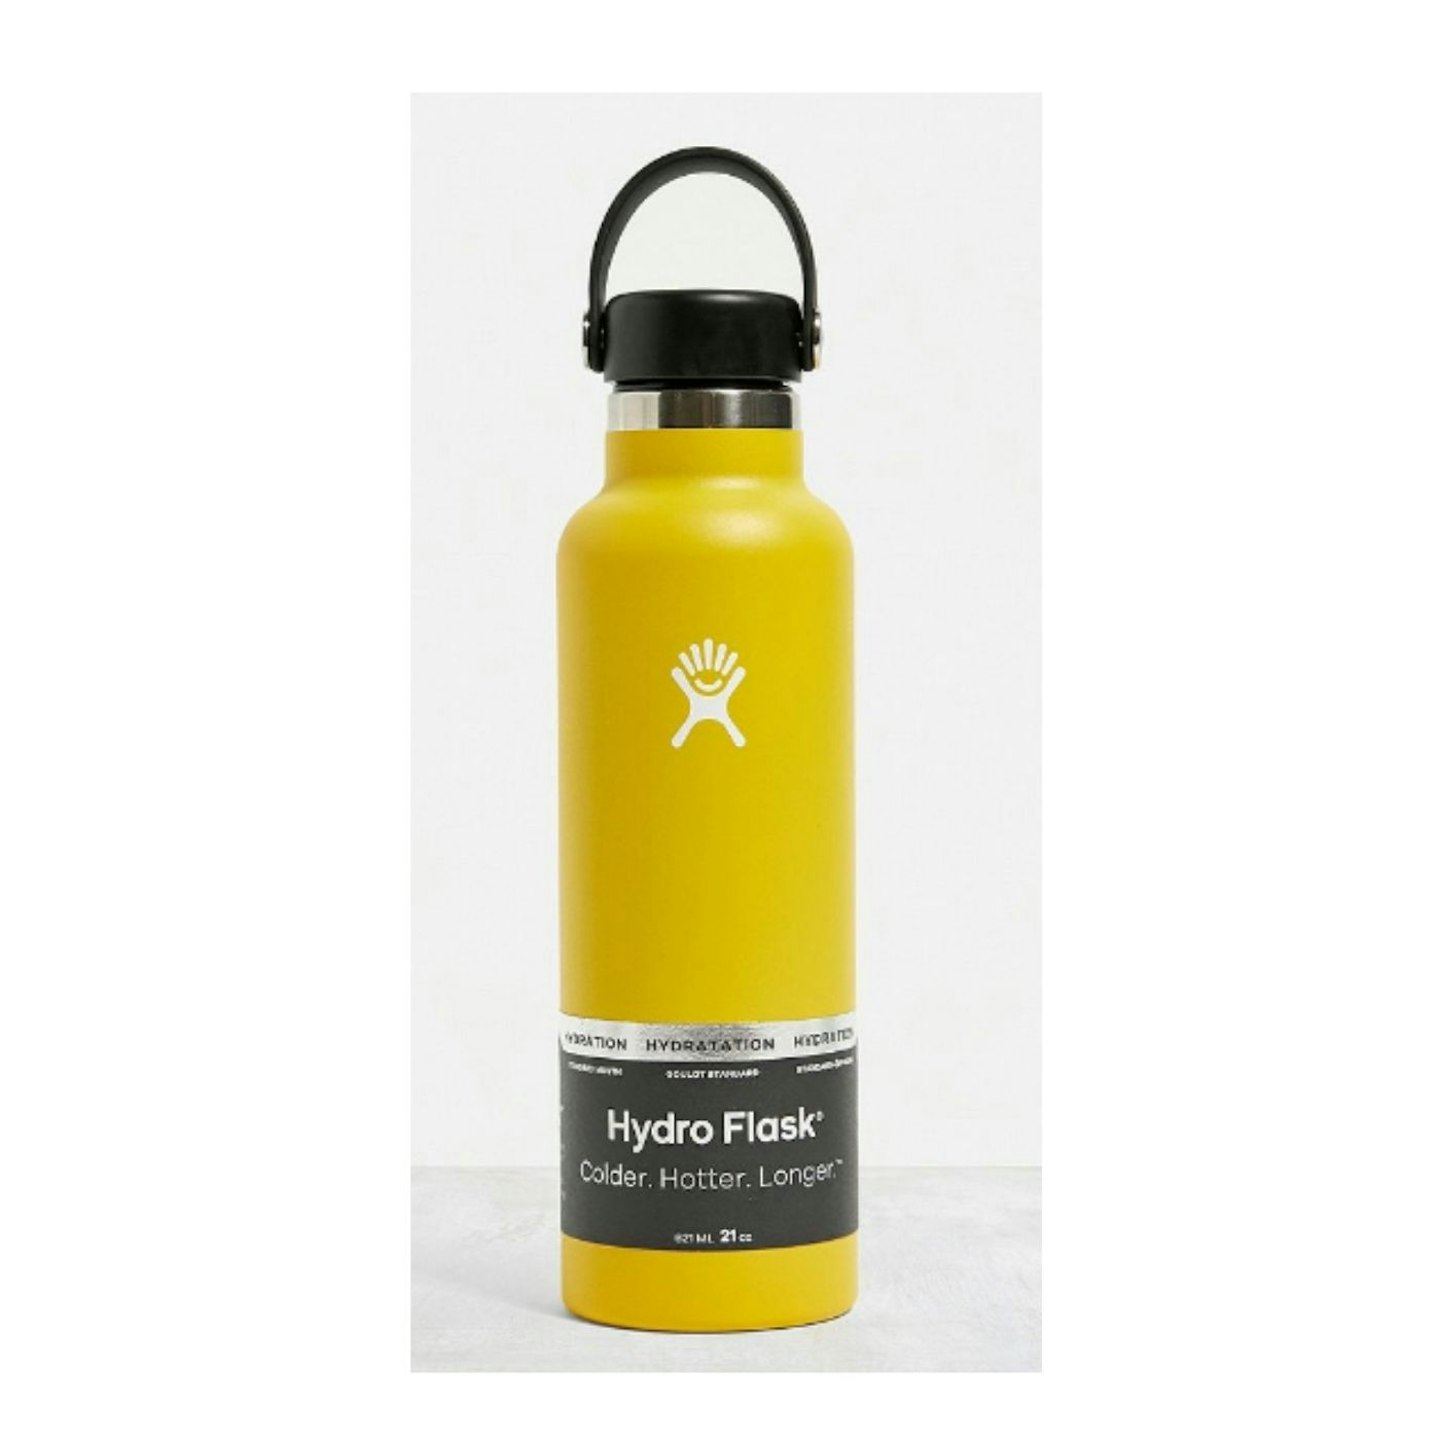 Hydro Flask Water bottle in yellow